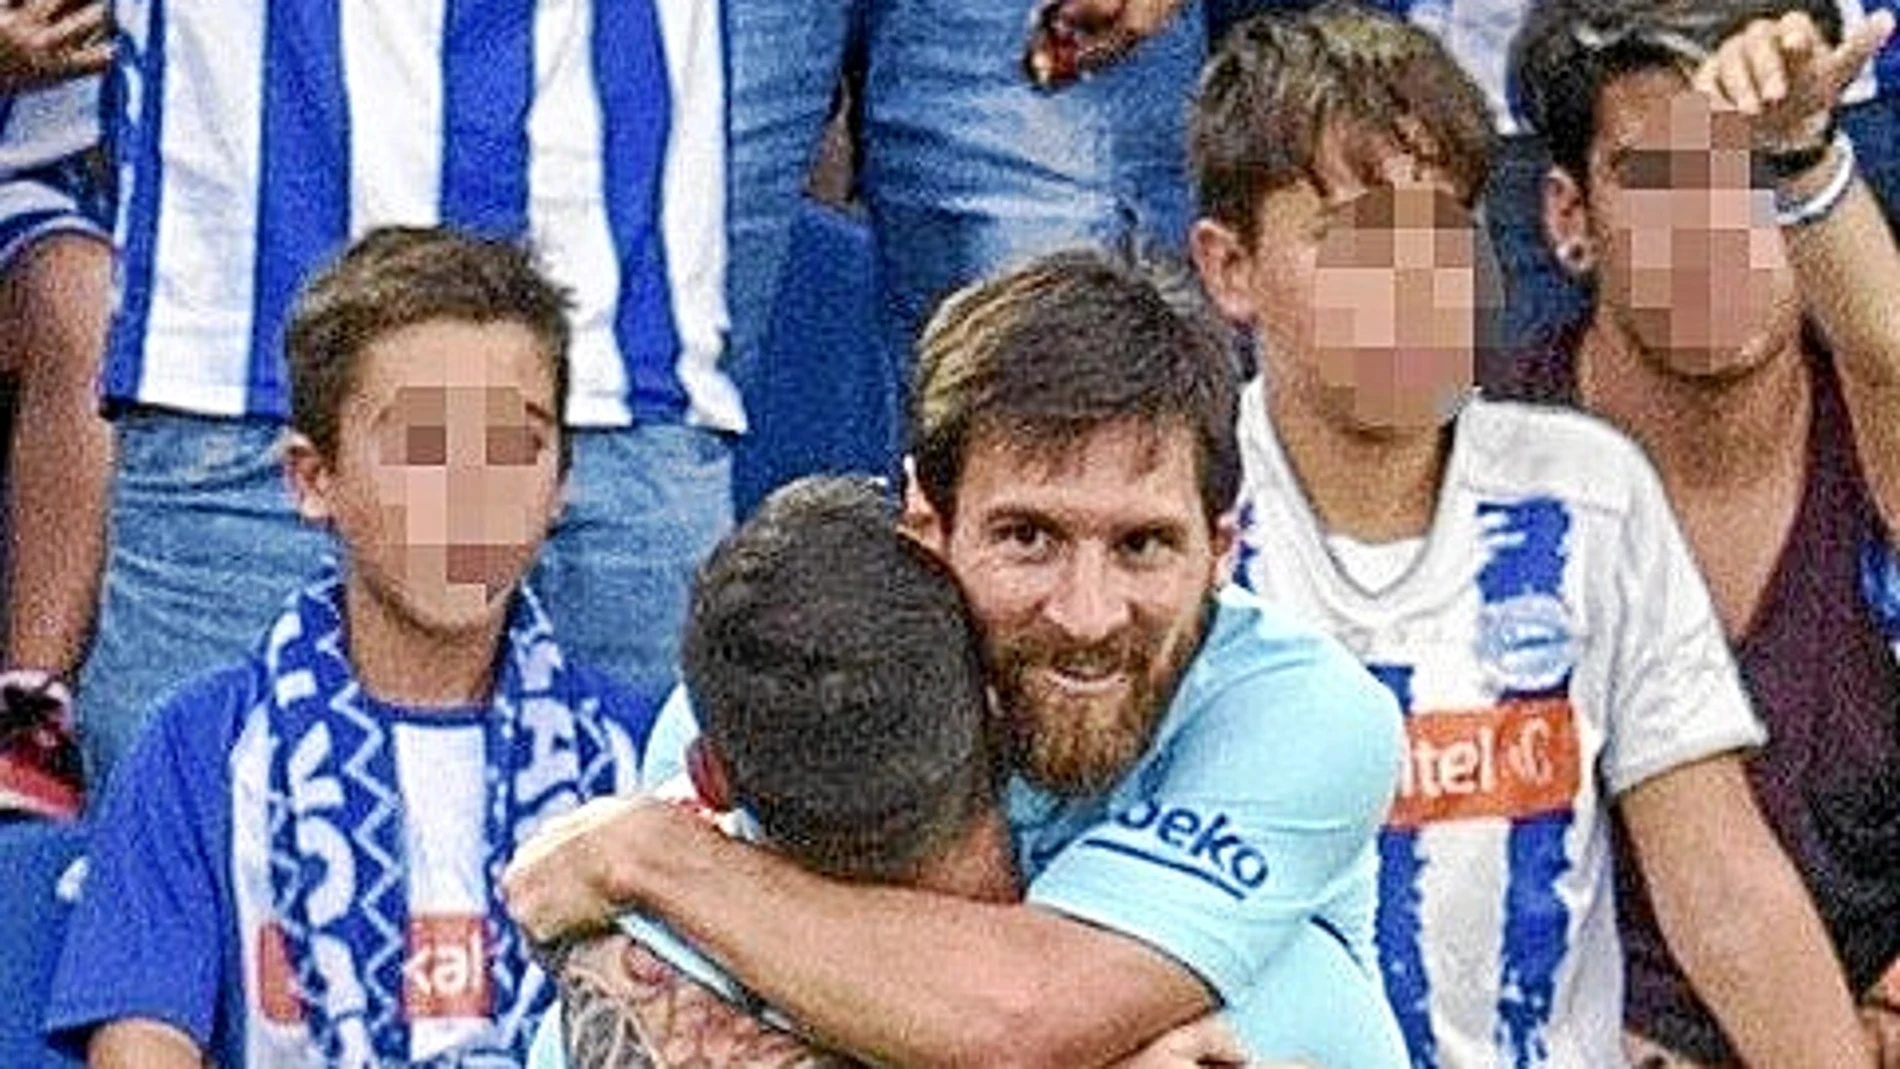 Messi disputa un balón con los jugadores del Alavés Mubarak Wakaso (i) y Tomás Pina